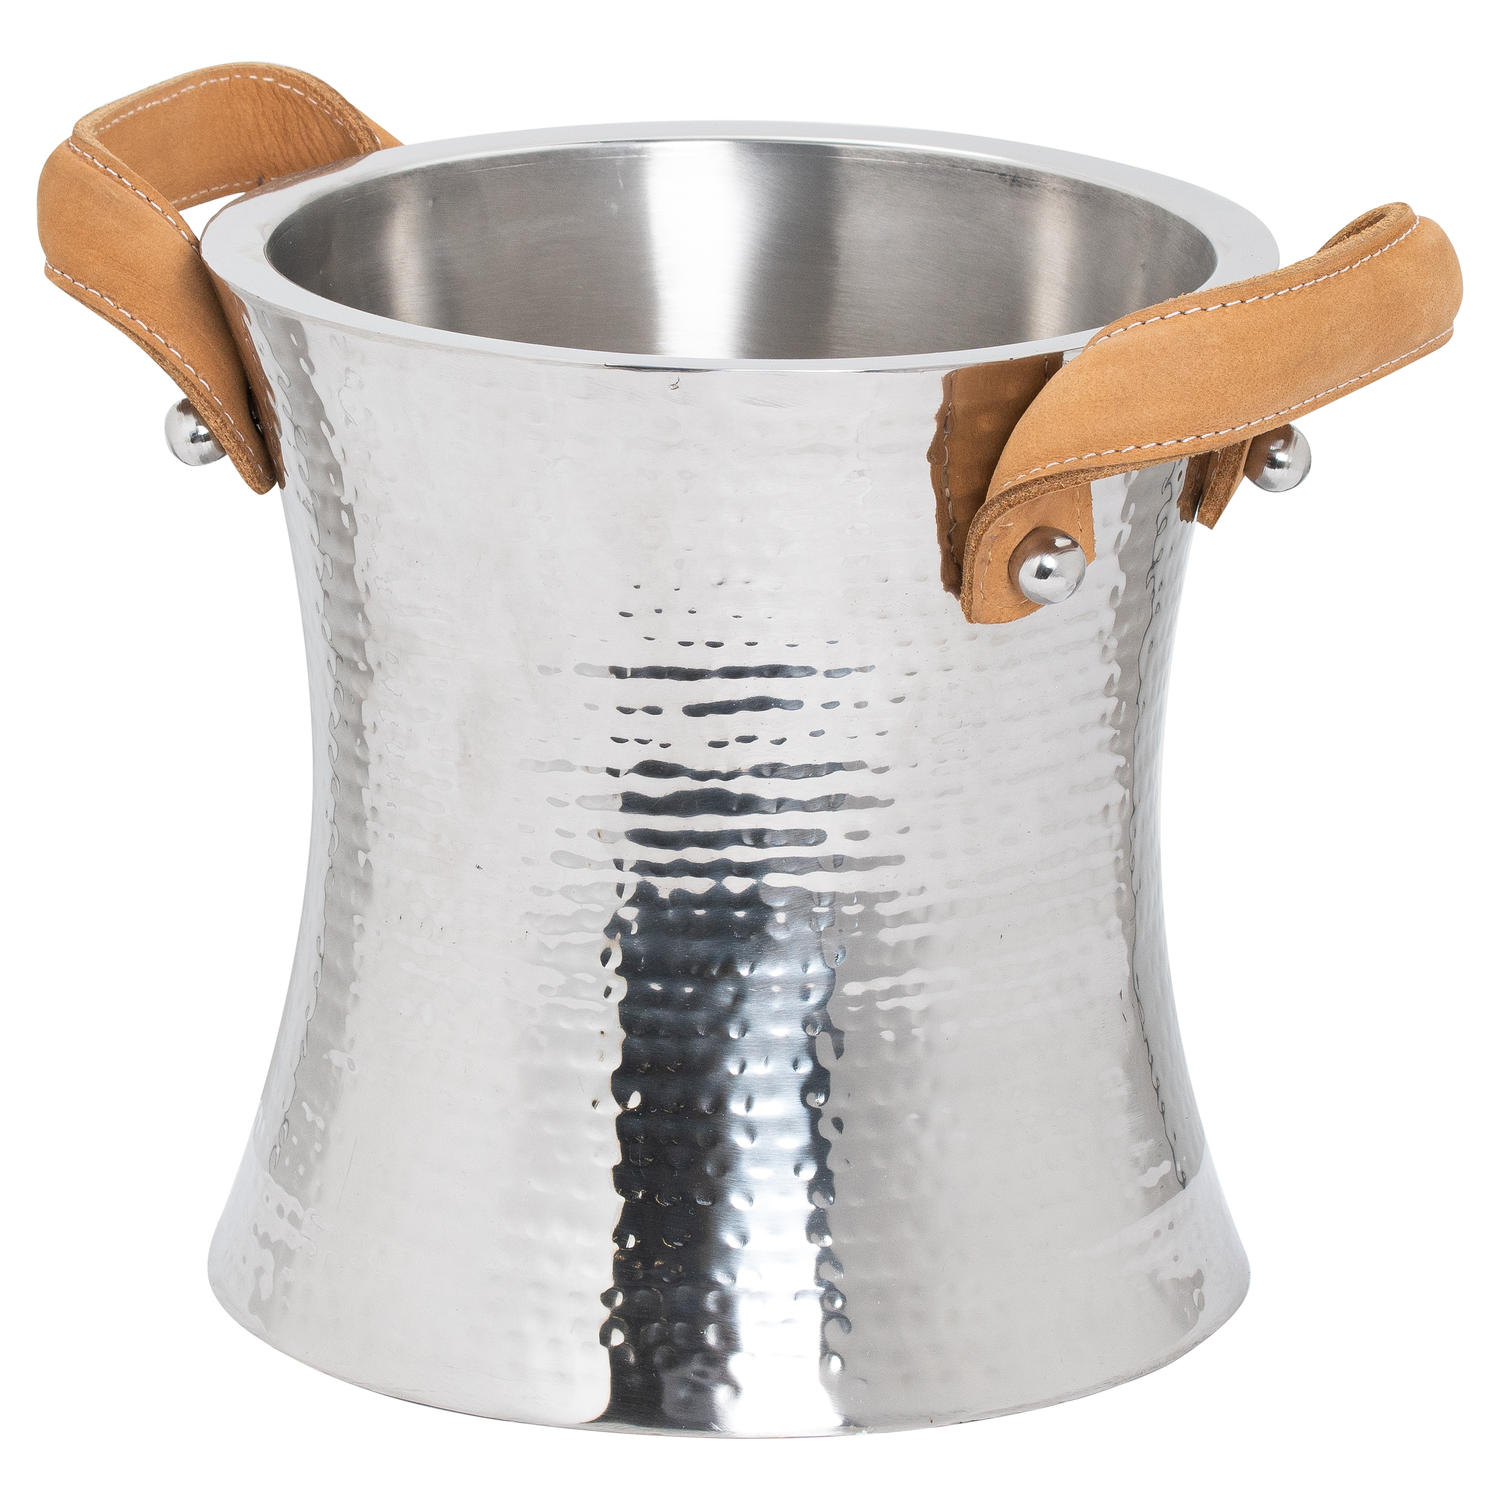 Leather Handled Ice Bucket - Image 1